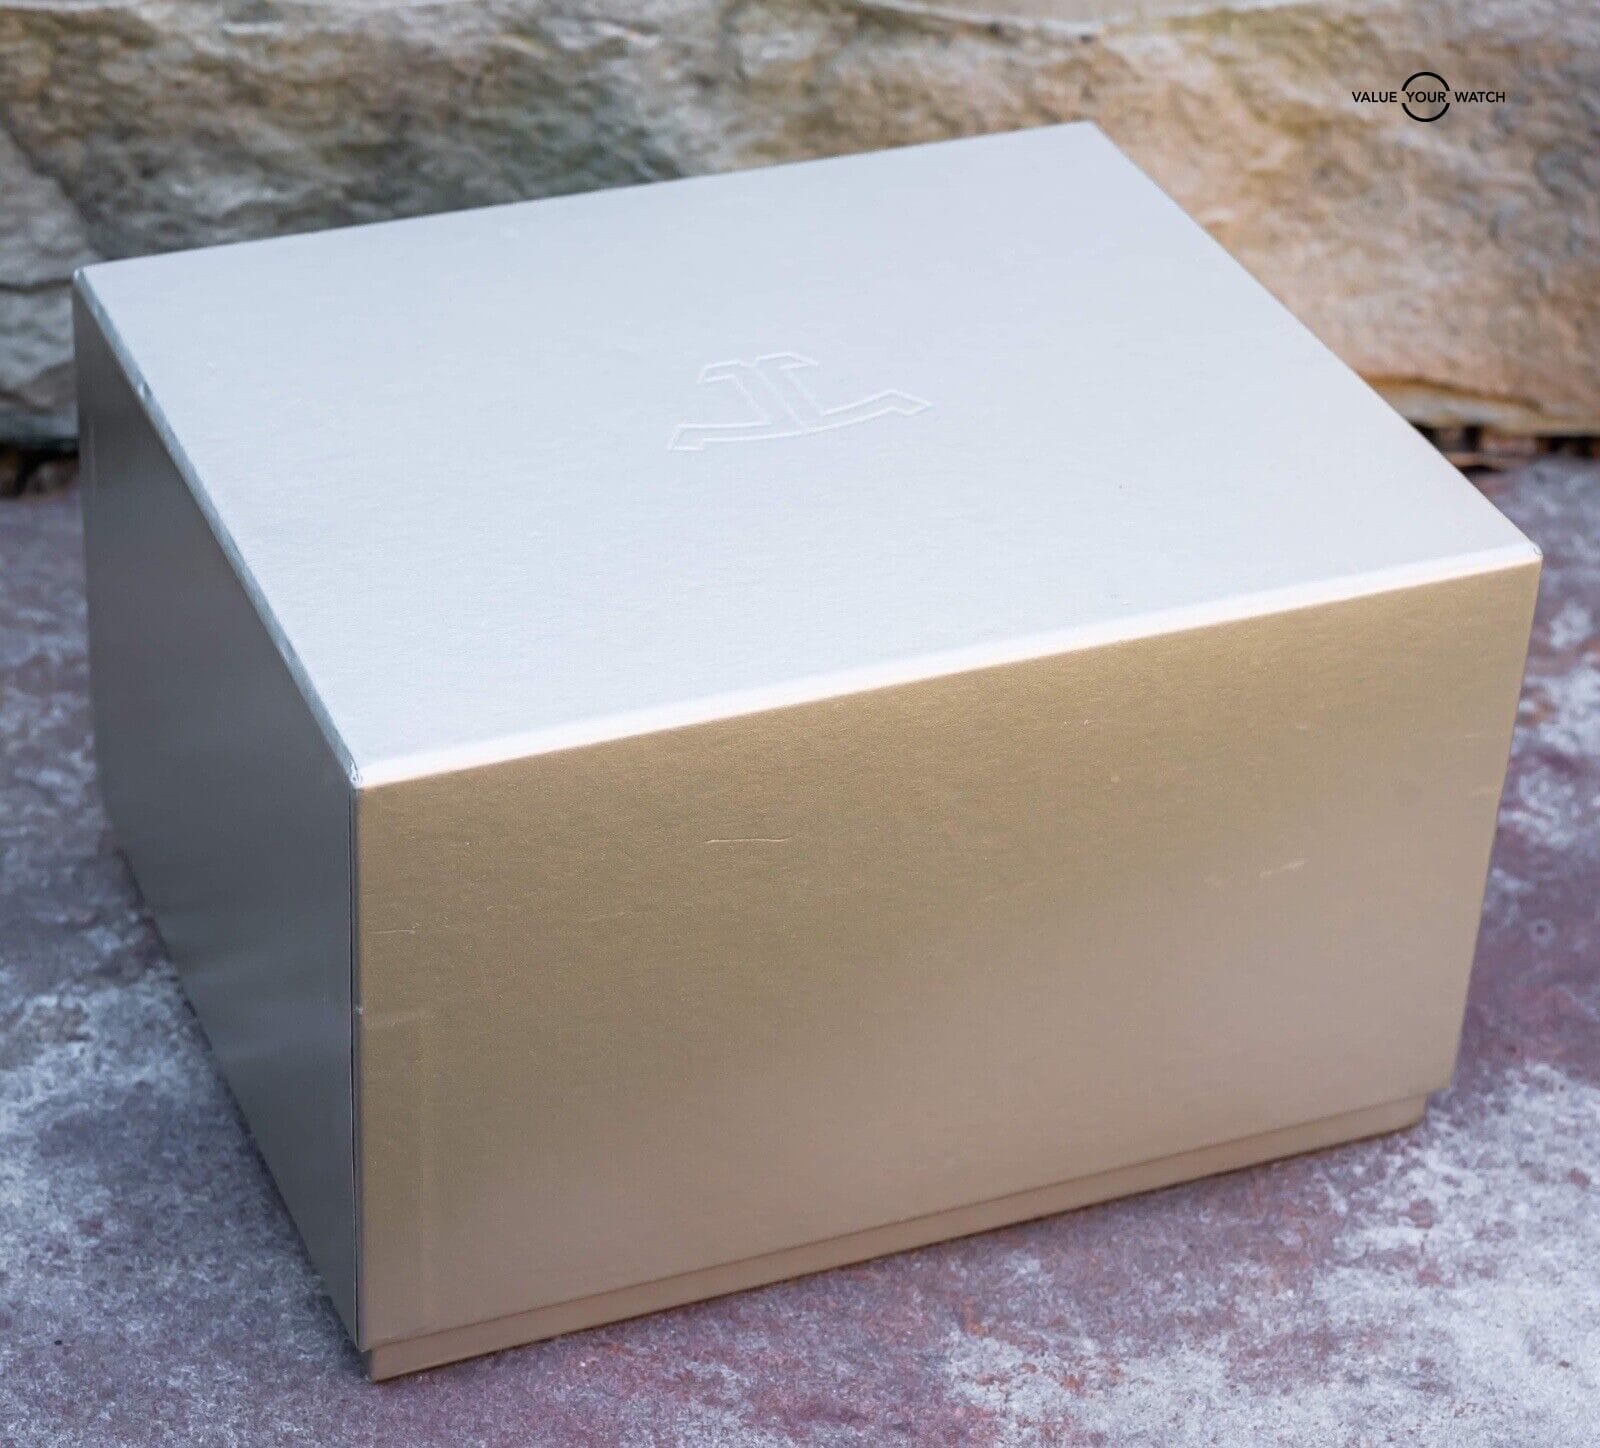 ps4 white box